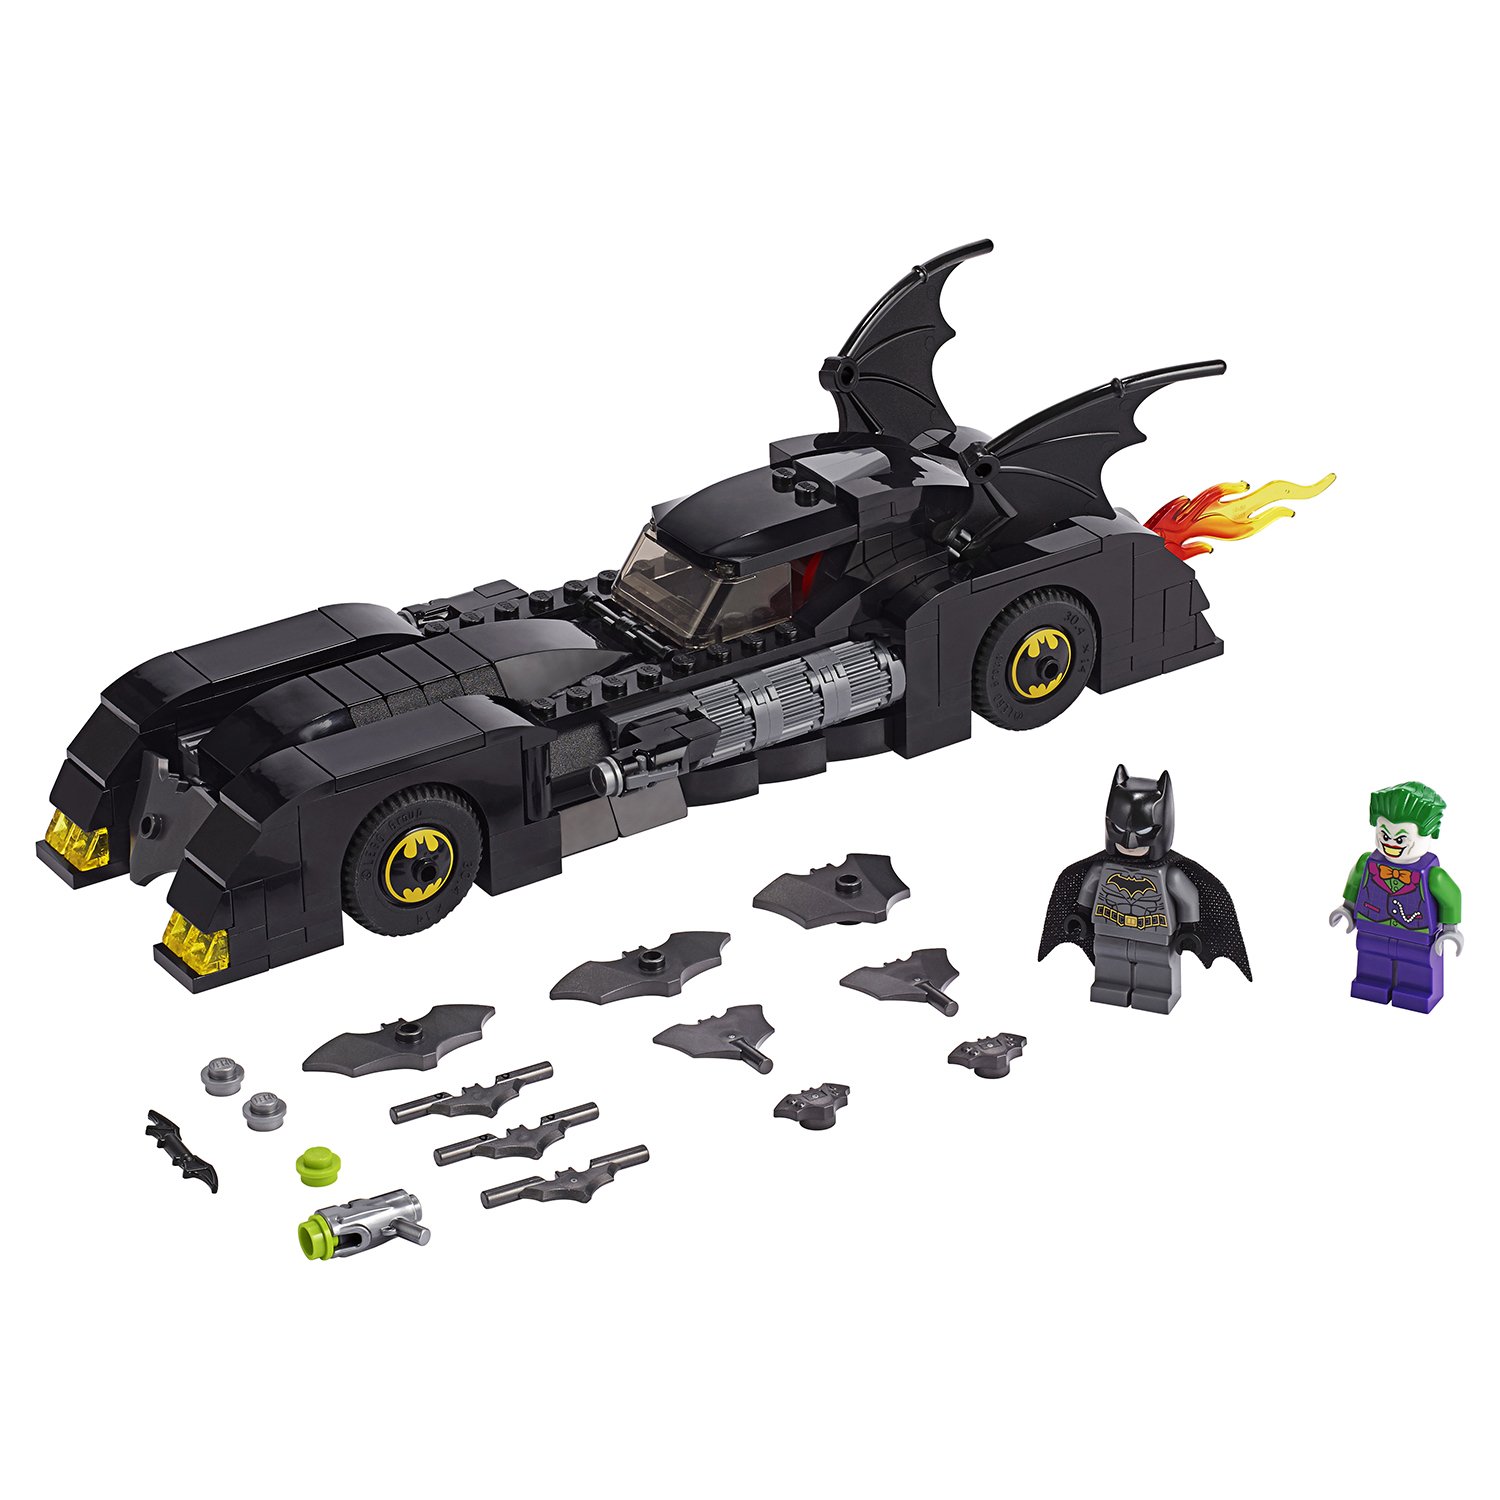 Lego DC Super Heroes 76119 Бэтмобиль: Погоня за Джокером